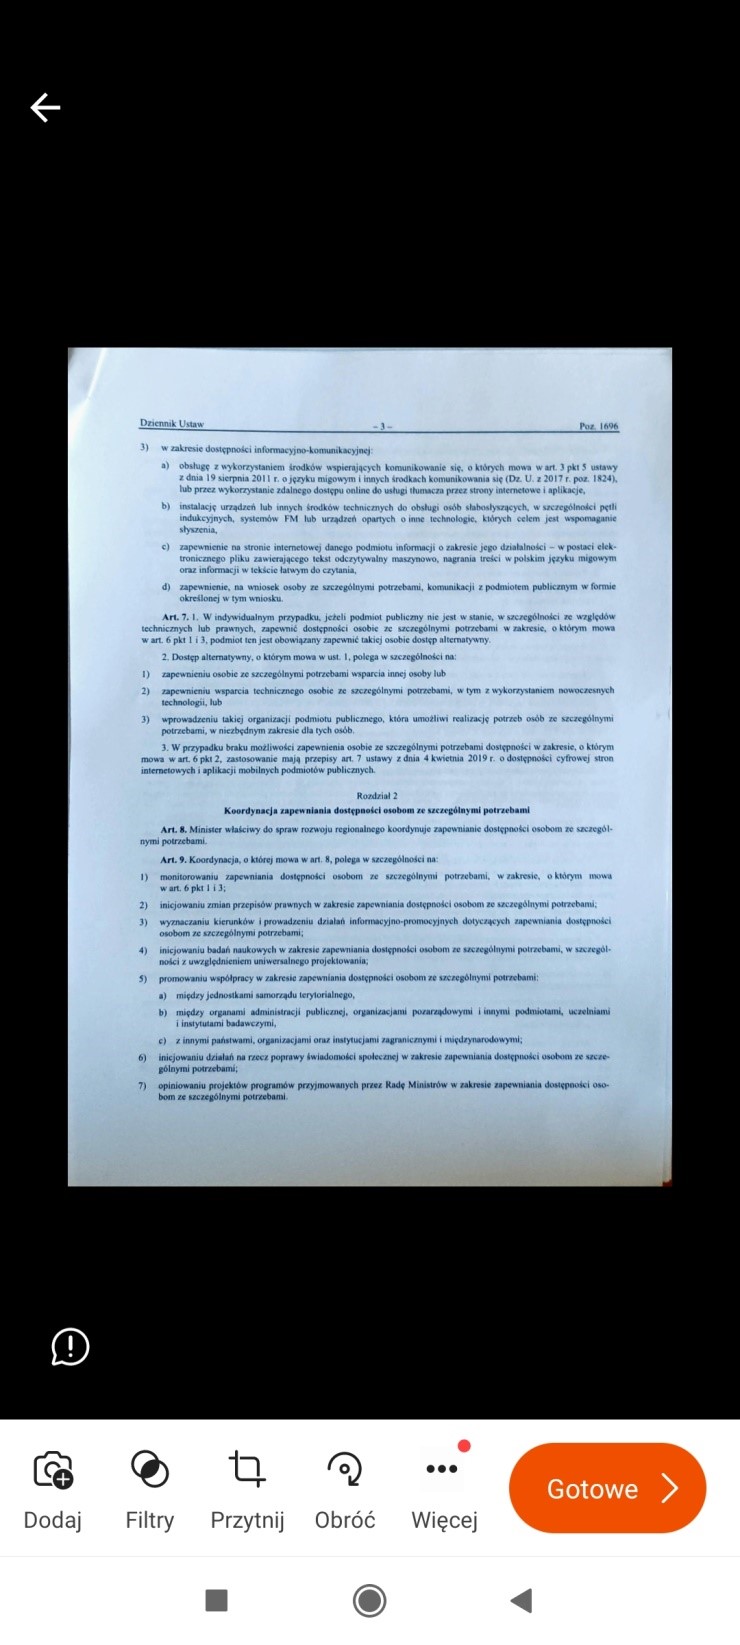 Зображення 3. Відкадрований документ, помаранчева кнопка під документом з написом Готово.